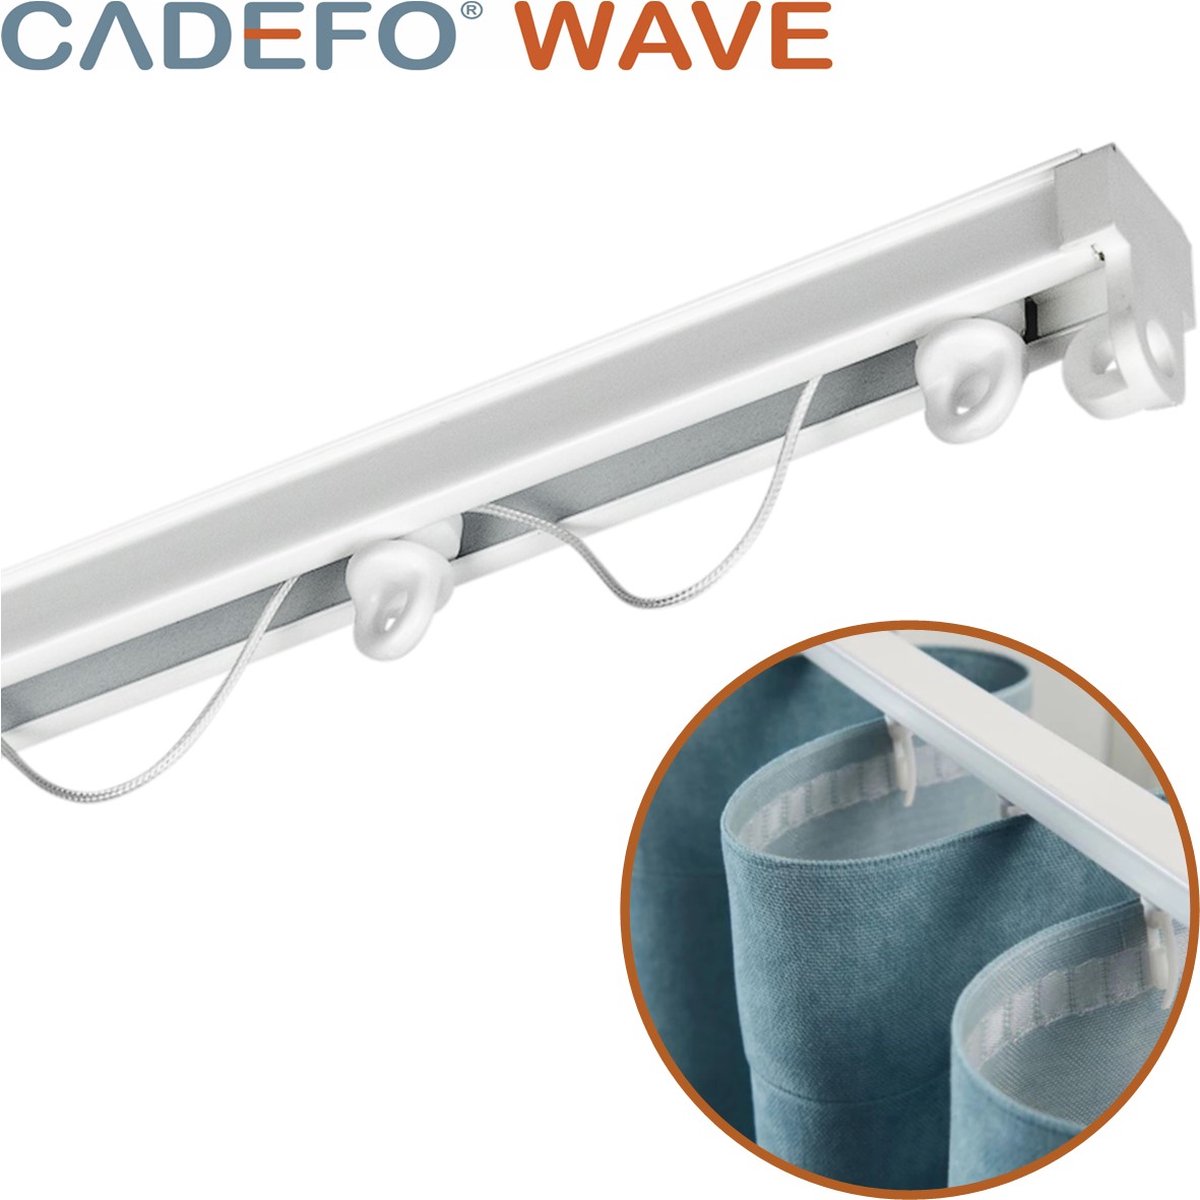 CADEFO WAVE (401 - 450 cm) Gordijnrails - Compleet op maat! - UIT 1 STUK - Leverbaar tot 6 meter - Plafondbevestiging - Lengte 440 cm